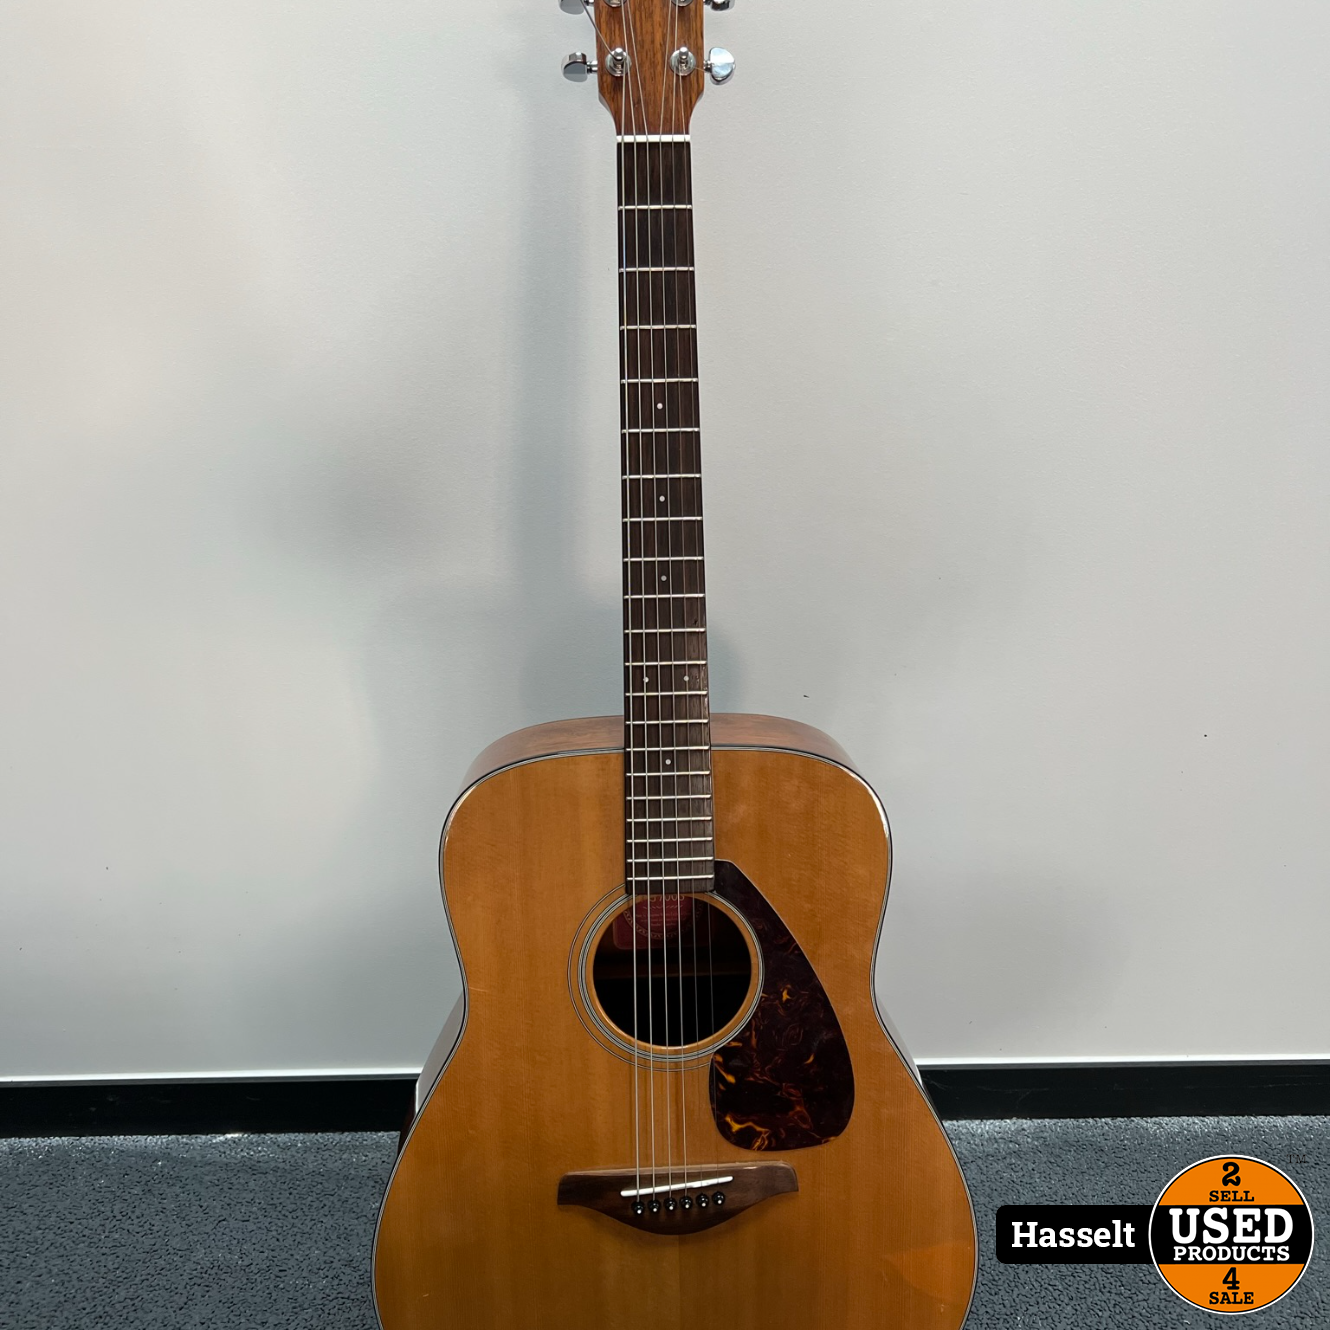 redden woede Kijkgat Yamaha FG700S akoestische western gitaar naturel - Used Products Hasselt